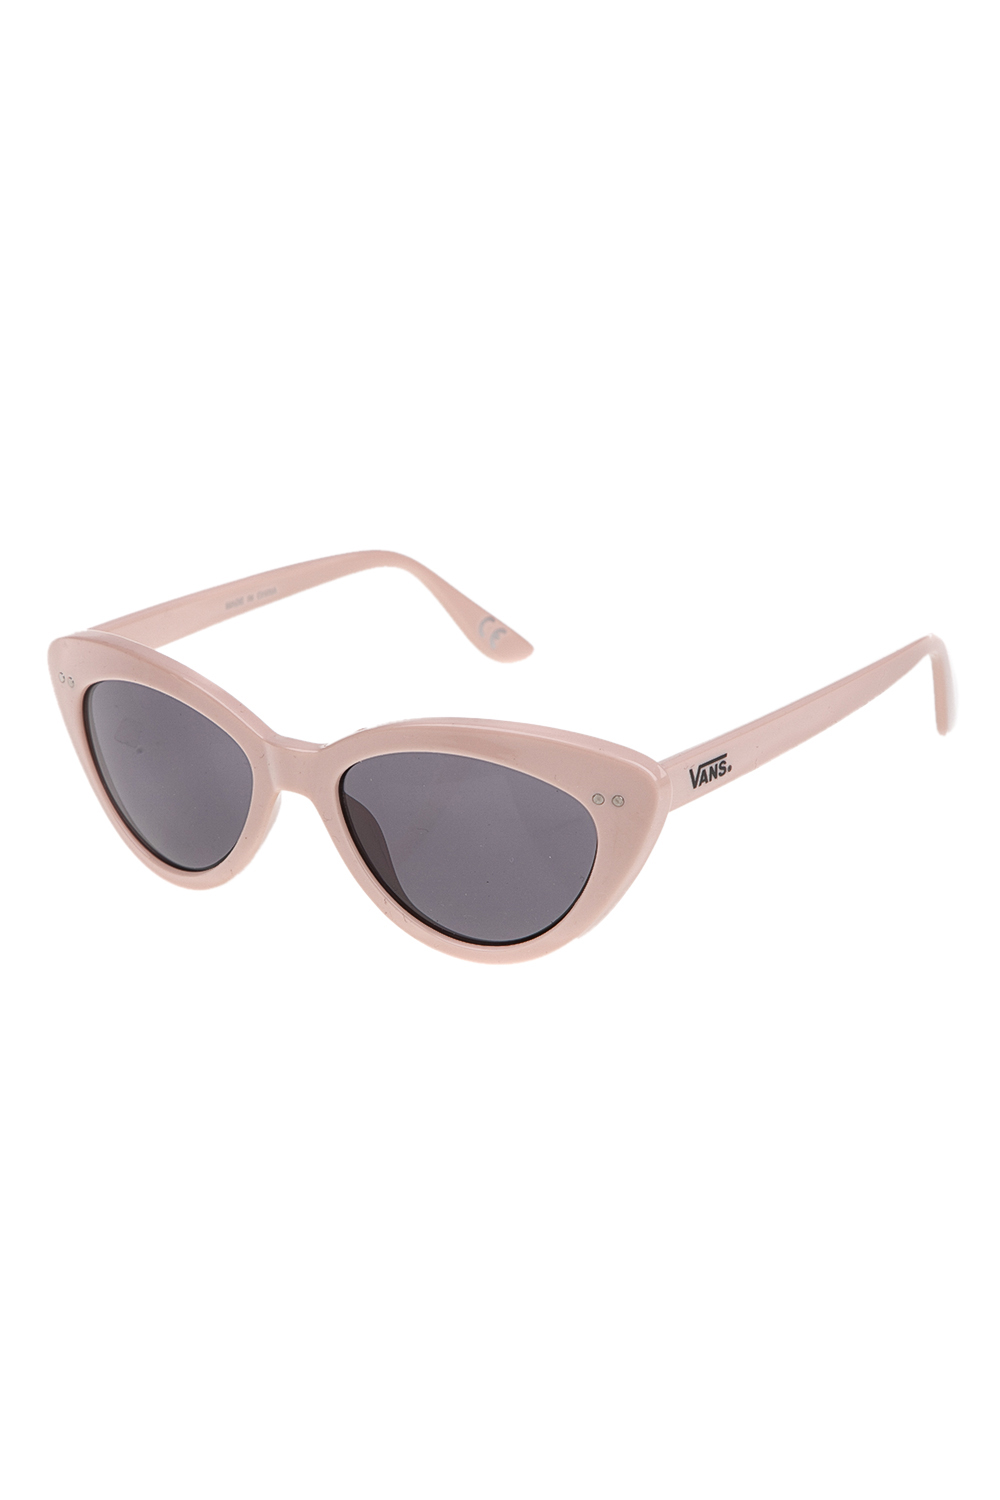 Γυναικεία/Αξεσουάρ/Γυαλιά/Ηλίου VANS - Γυναικεία γυαλιά ηλίου WILDIN' ροζ